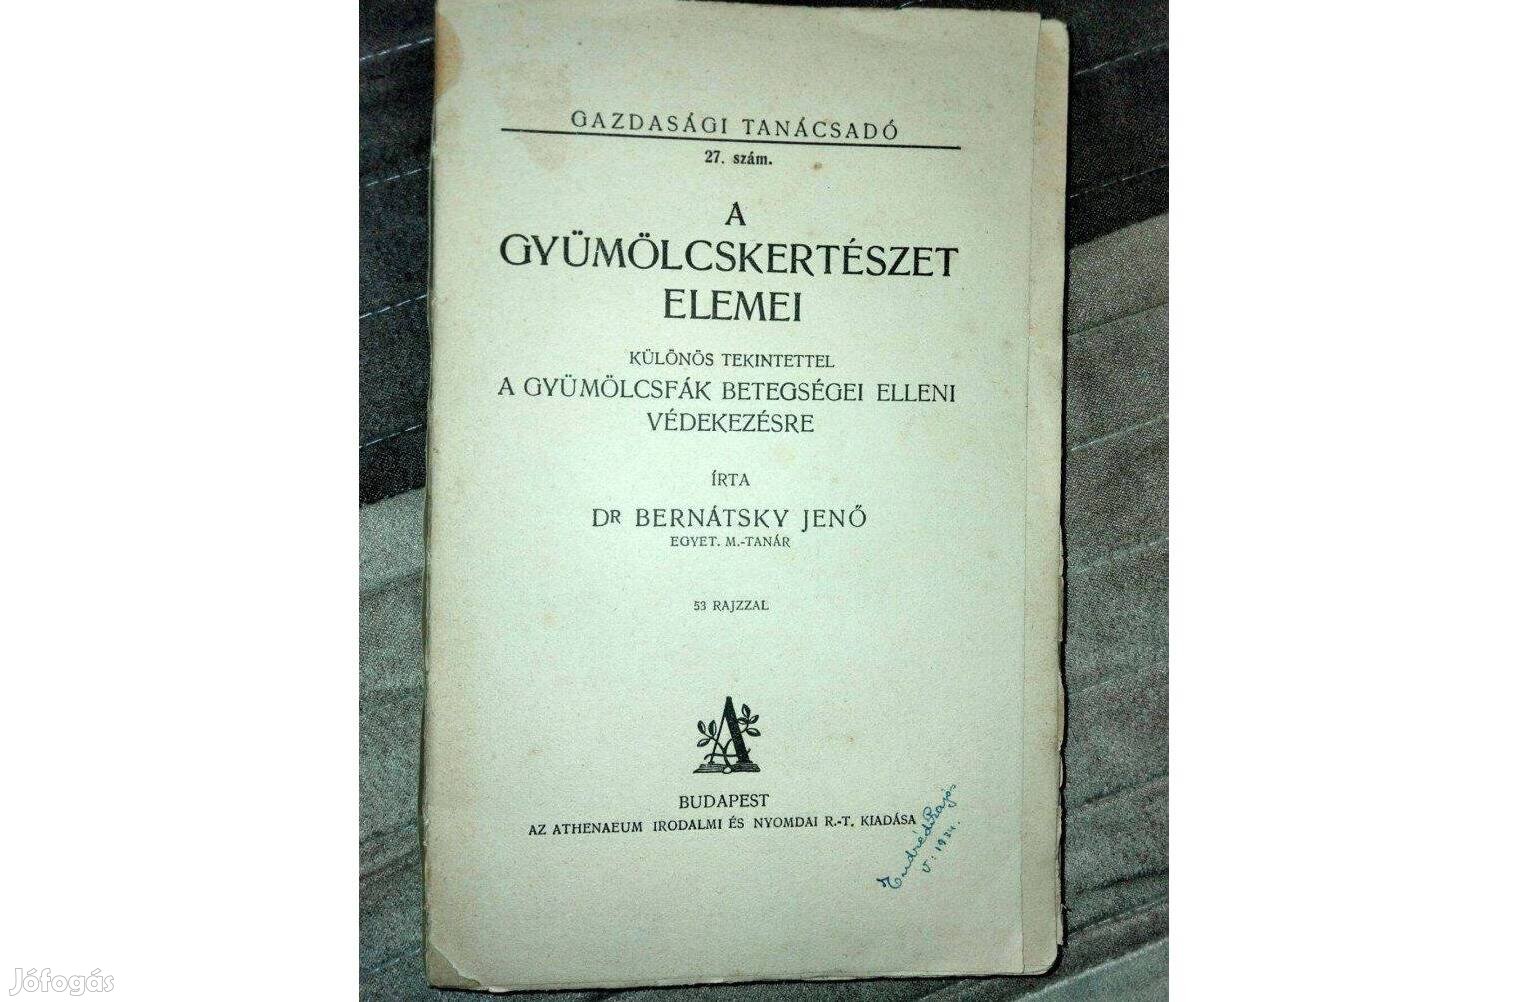 Dr. Bernátsky Jenő: A gyümölcskertészet elemei (1928-as kiadás)